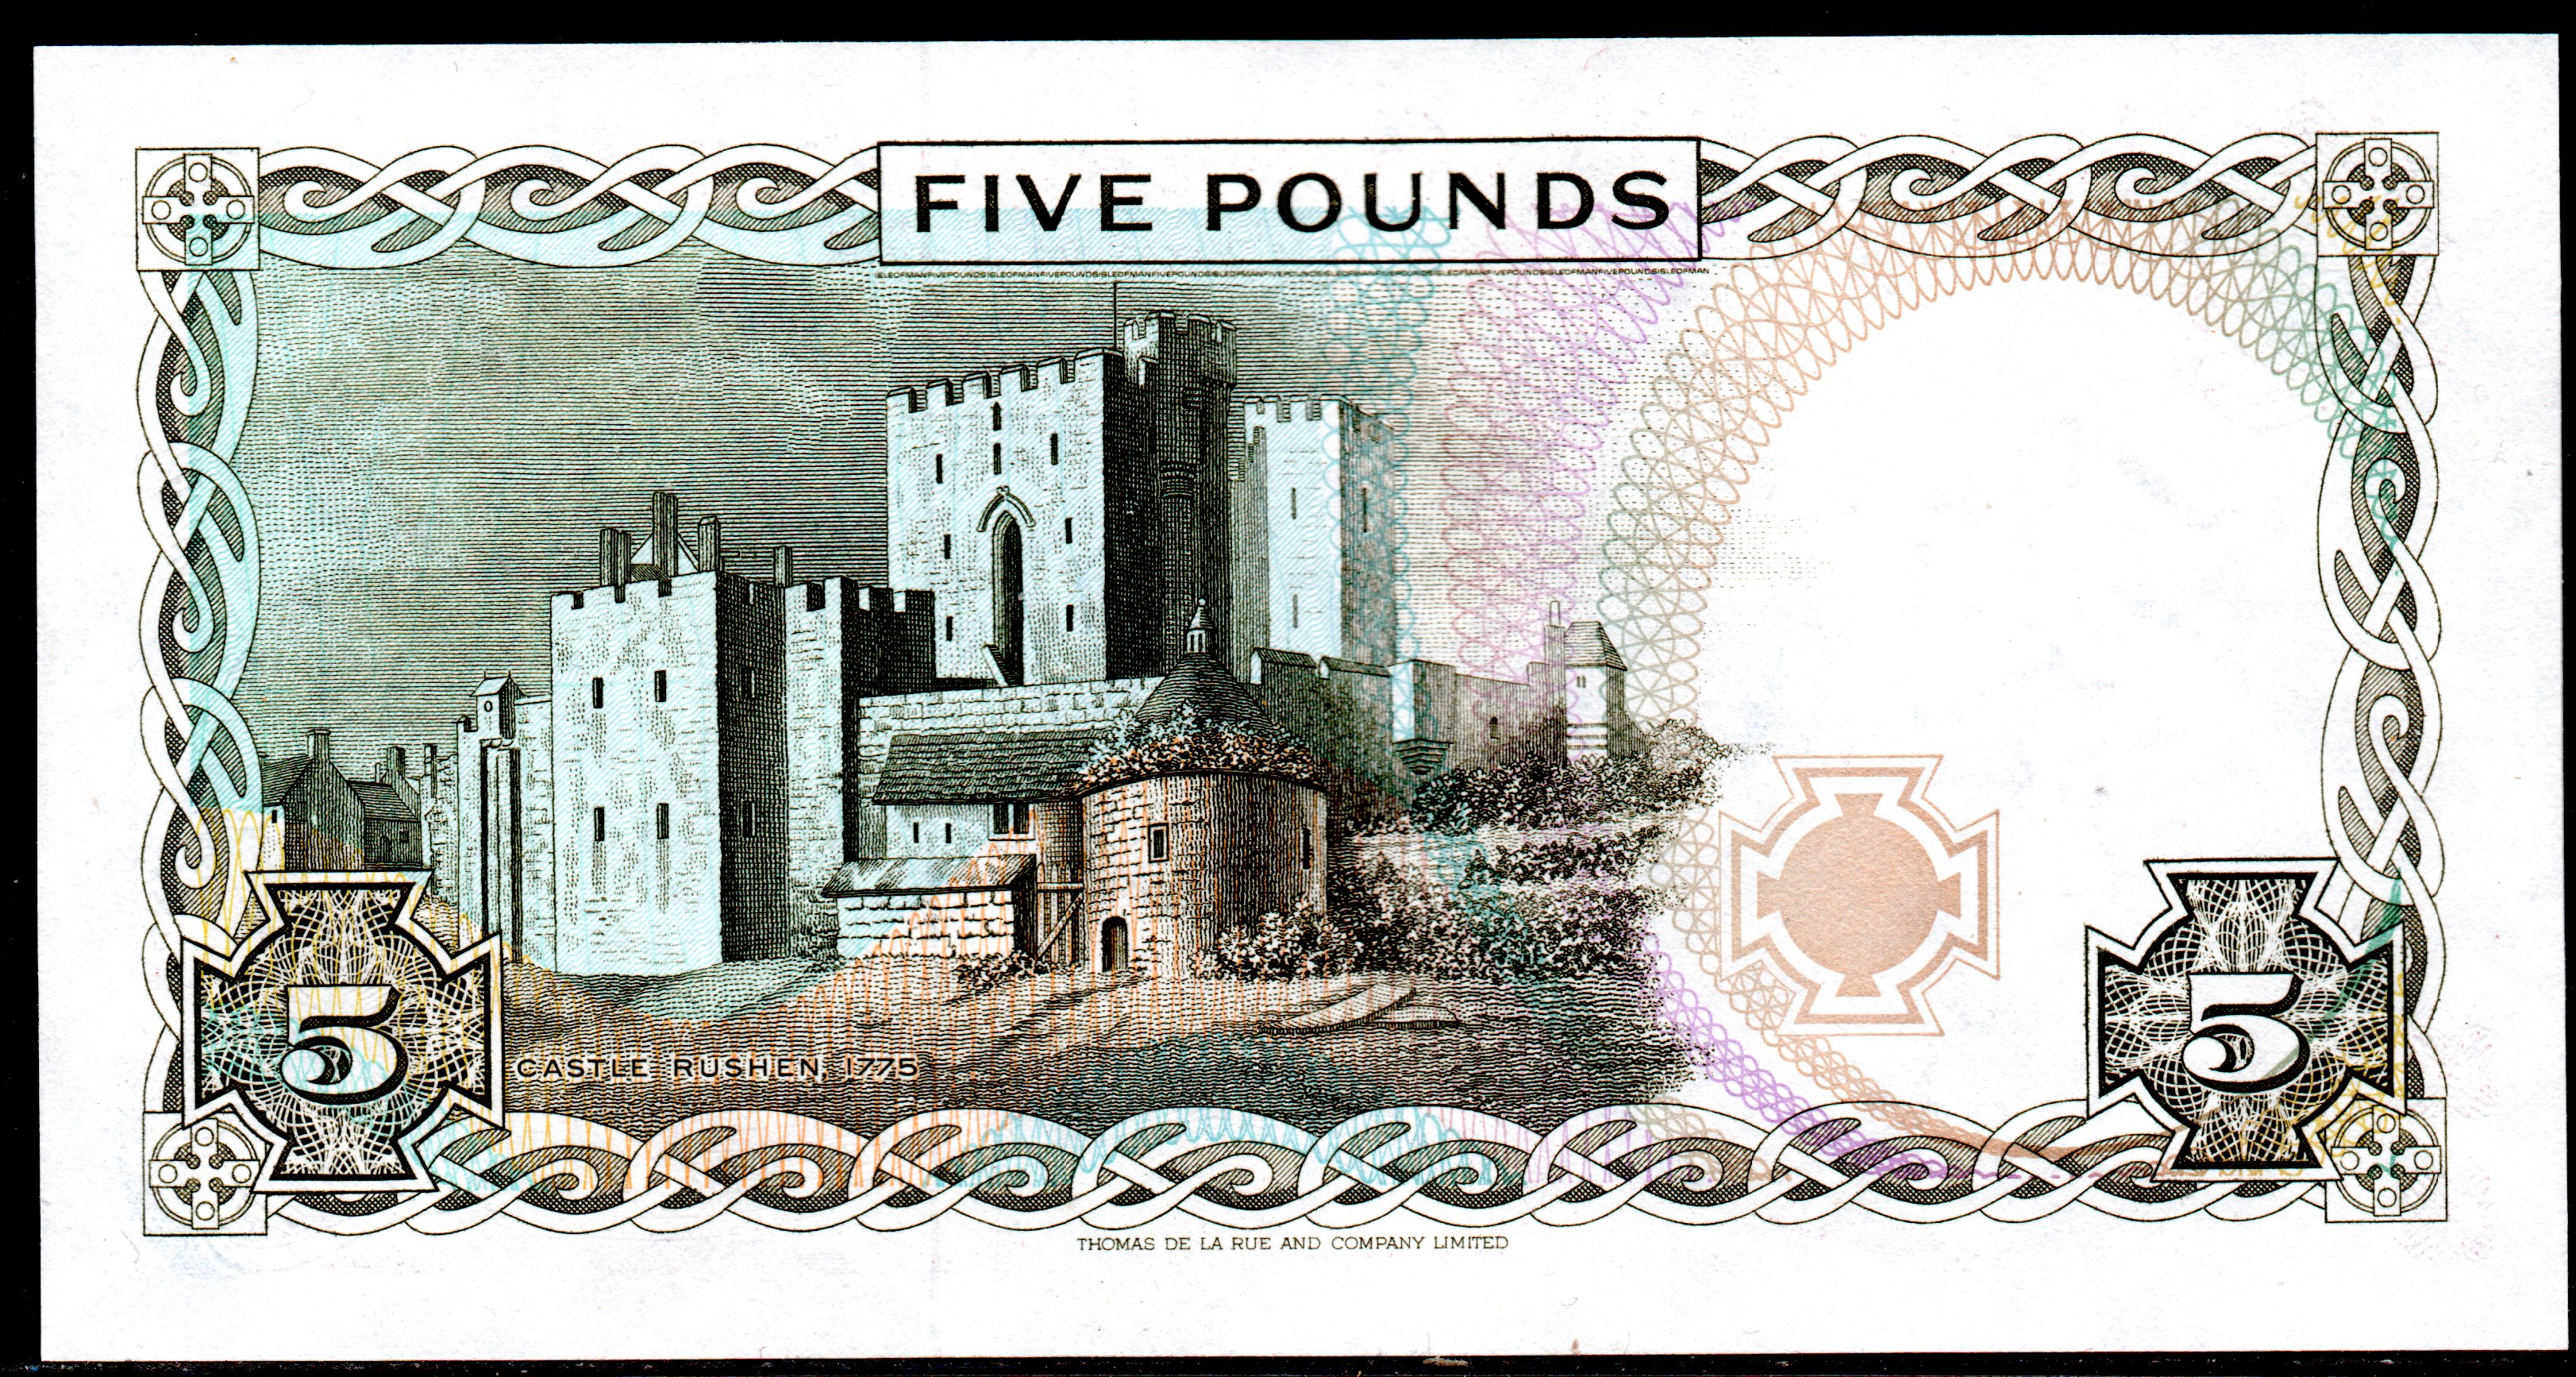 Banknote Isle of Man,   $ 5 Livre, 1991, P-41,  UNC,  Queen Elizabeth II